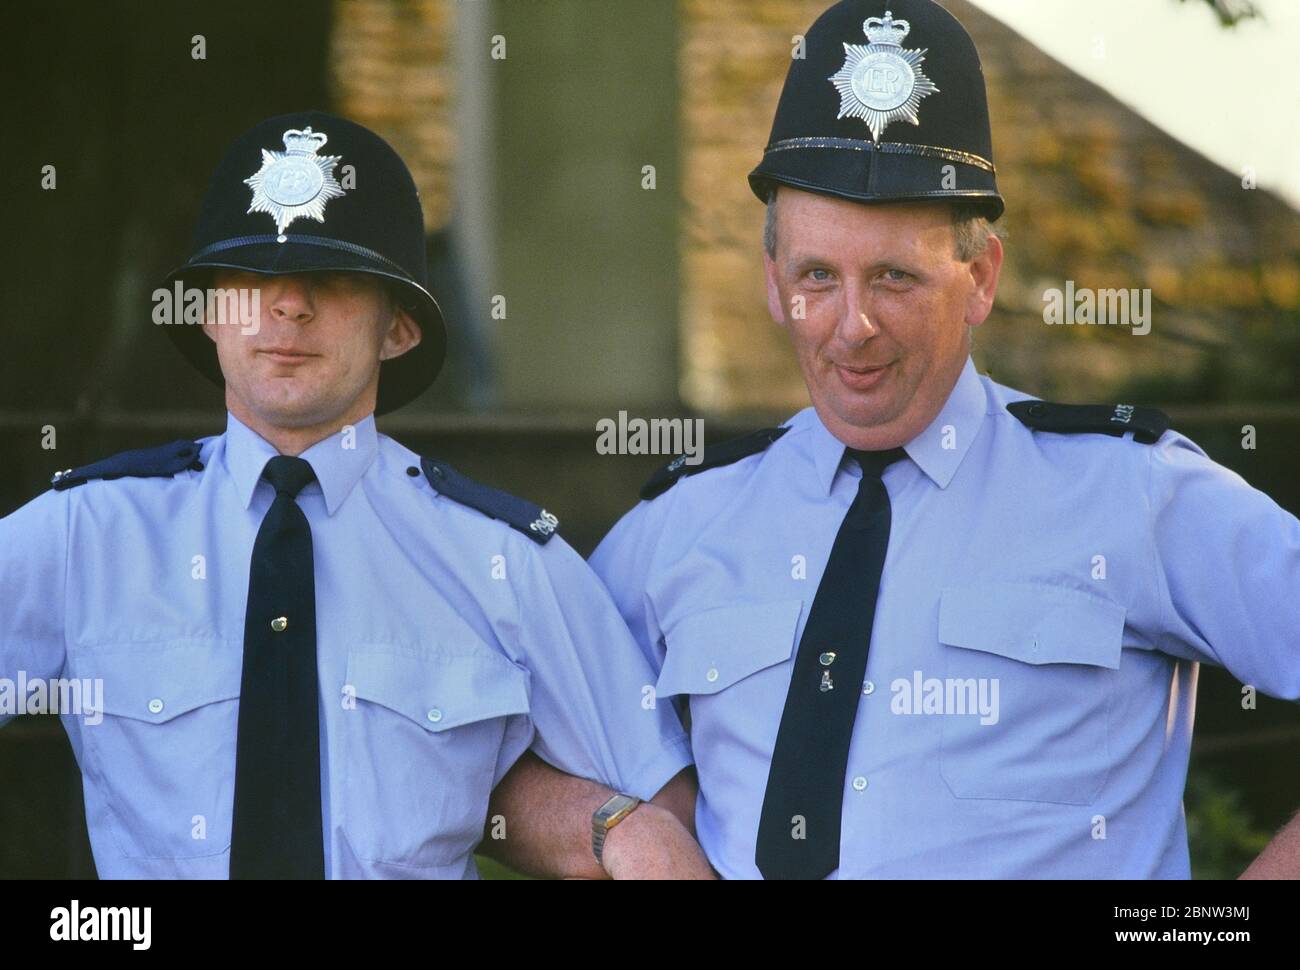 Deux gendarmes de police masculins se posent pour rire avec des casques de gardien de taille incorrecte. Angleterre, Royaume-Uni. Vers les années 1980 Banque D'Images